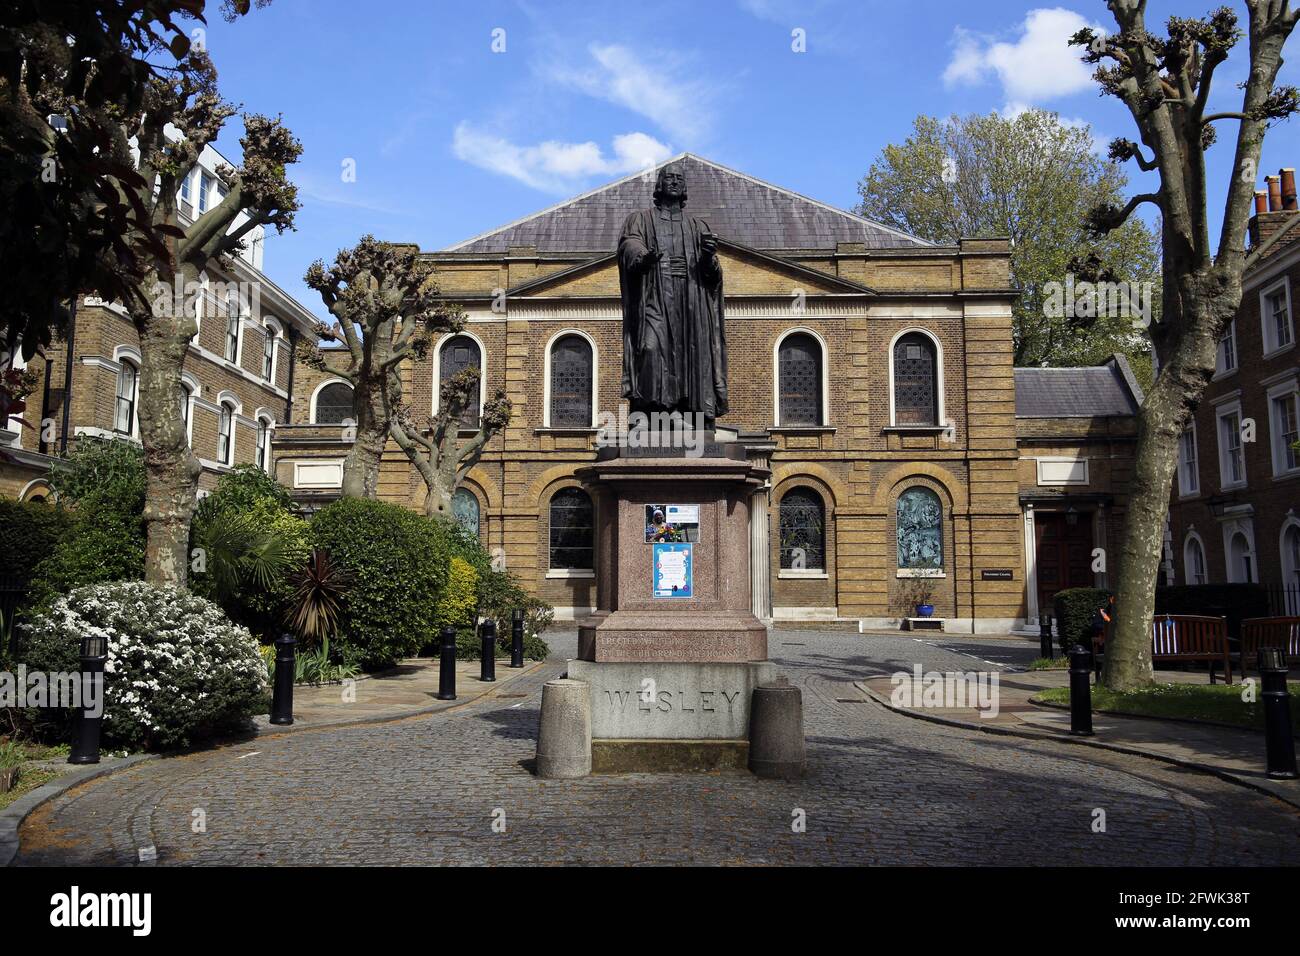 Die Welsey's Chapel, die vom Gründer der Methodist Movement, John Wesley, in der City Road im Londoner Stadtteil Islington errichtet wurde. Architekt George Dance The Y Stockfoto